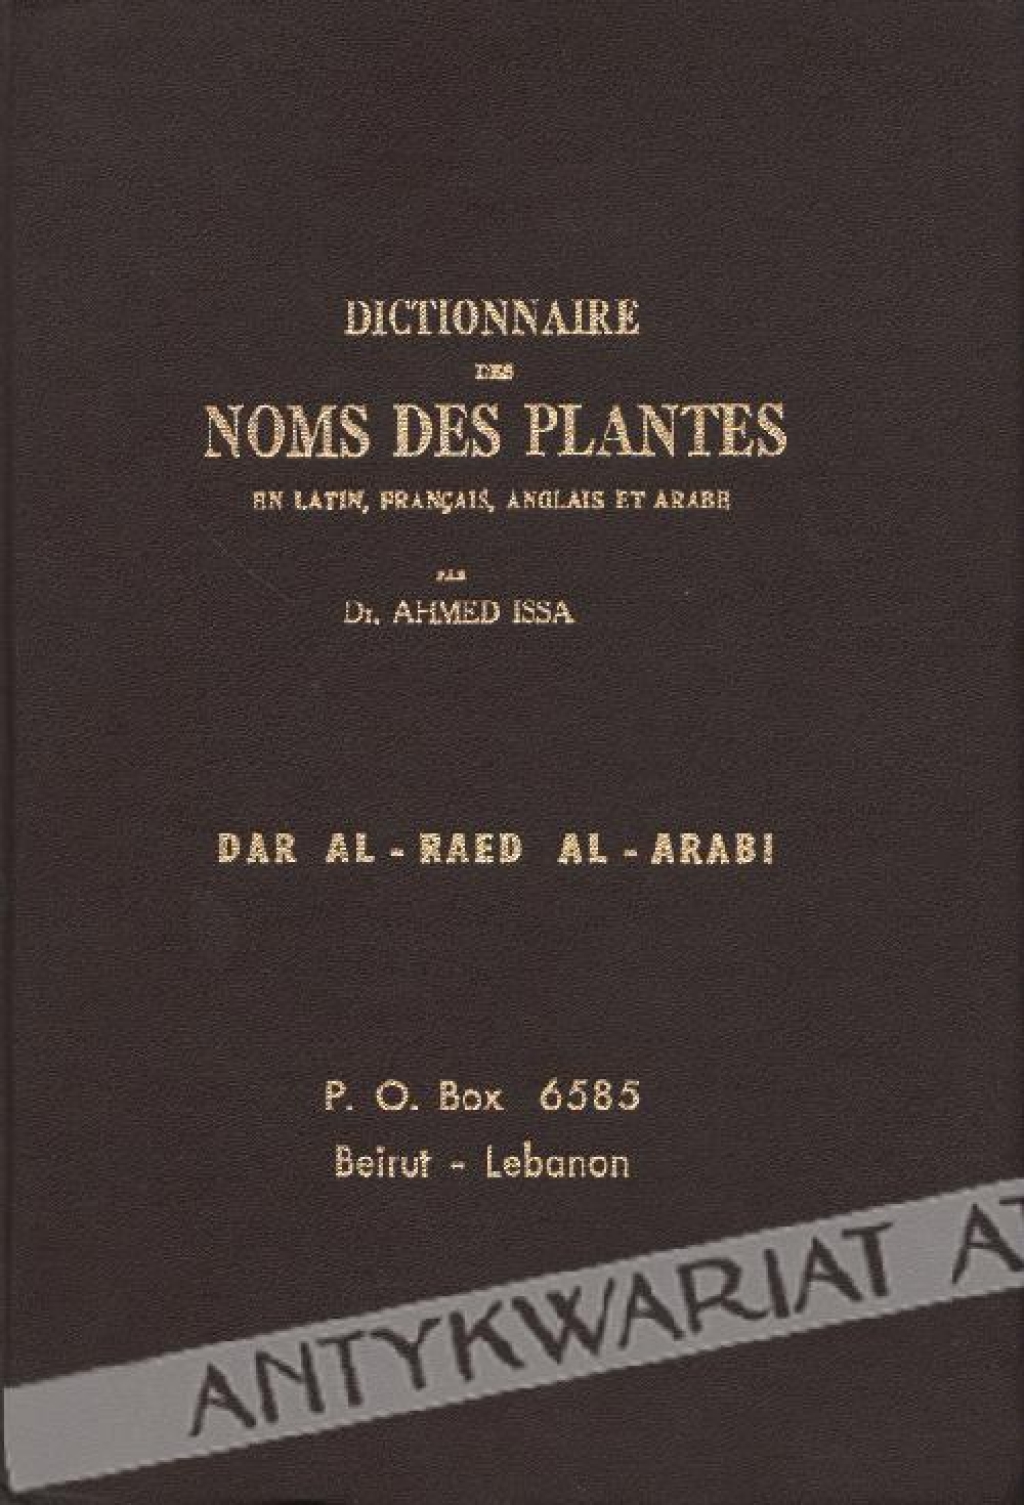 Dictonnaire des Noms des Plantes en latin, francais, anglais et arabe